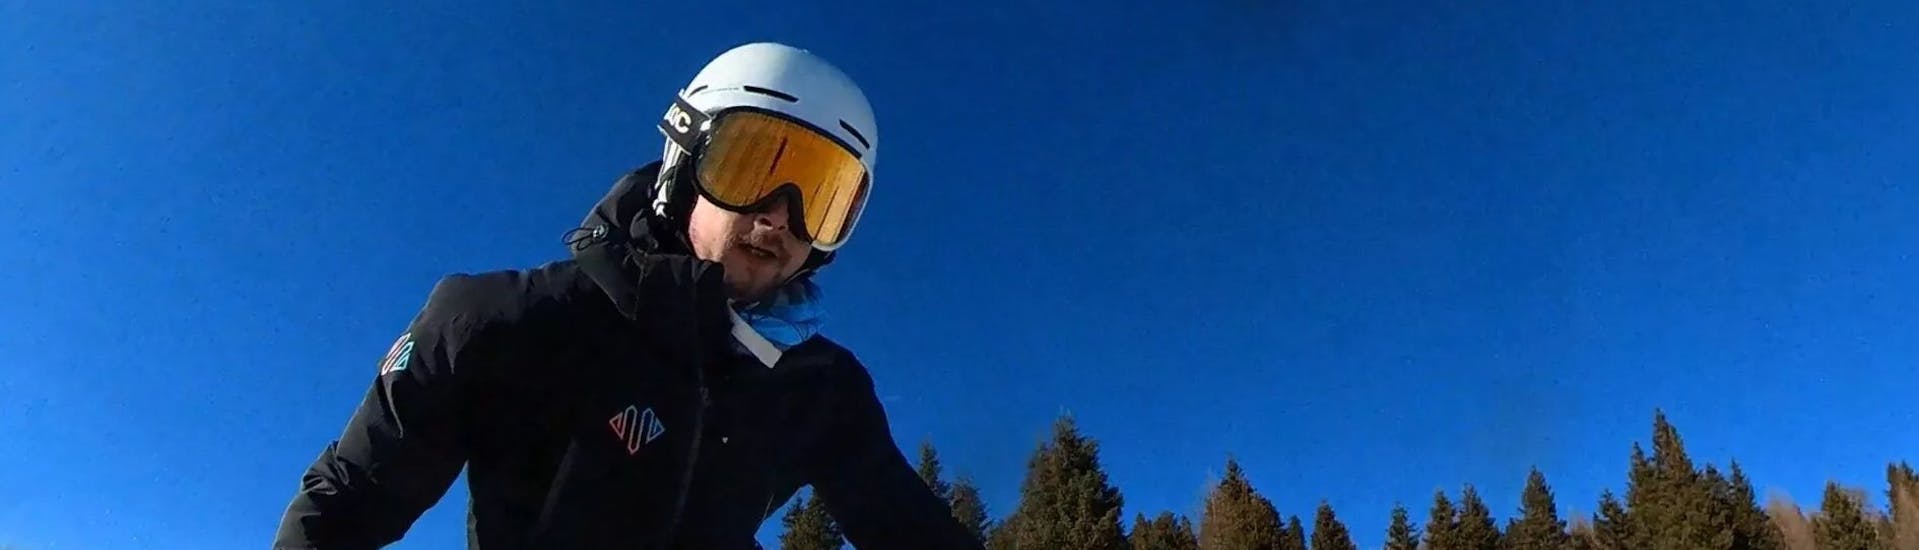 Skikurs für Erwachsene ab 16 Jahren mit Erfahrung.